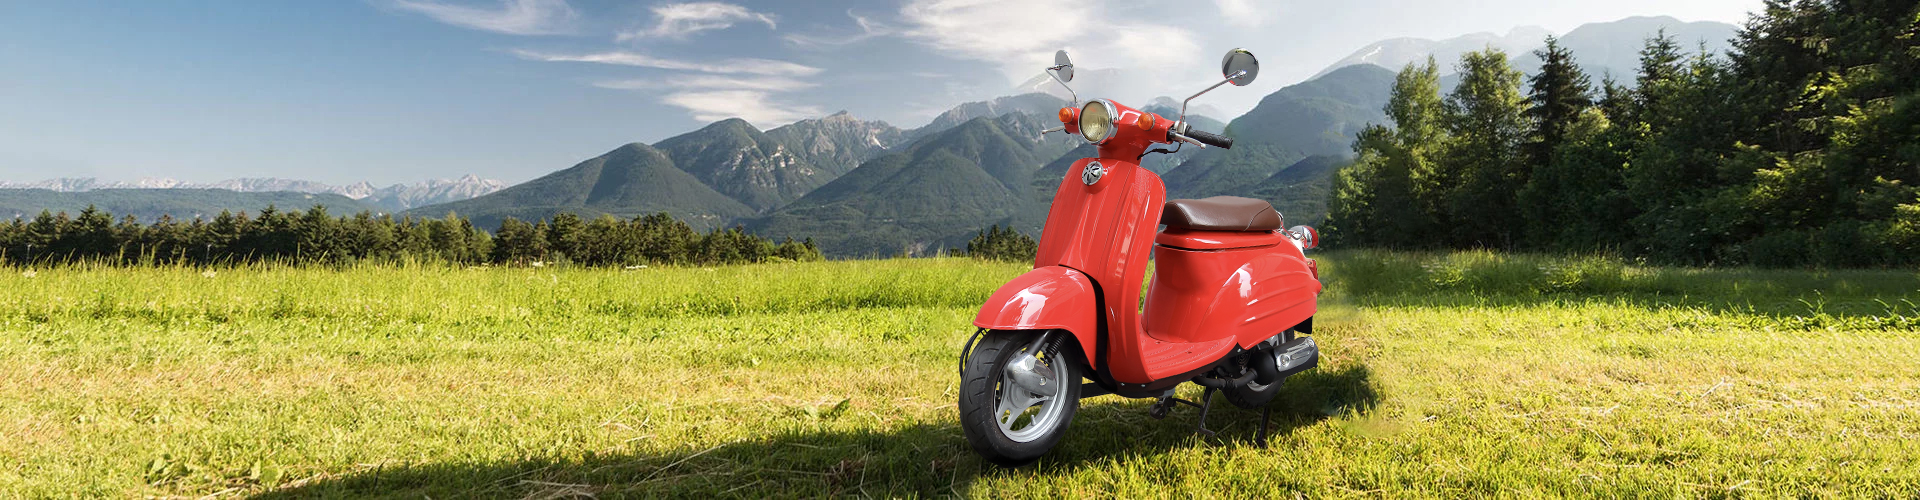 Rotes Moped auf einem Feld vor einer Bergkulisse.